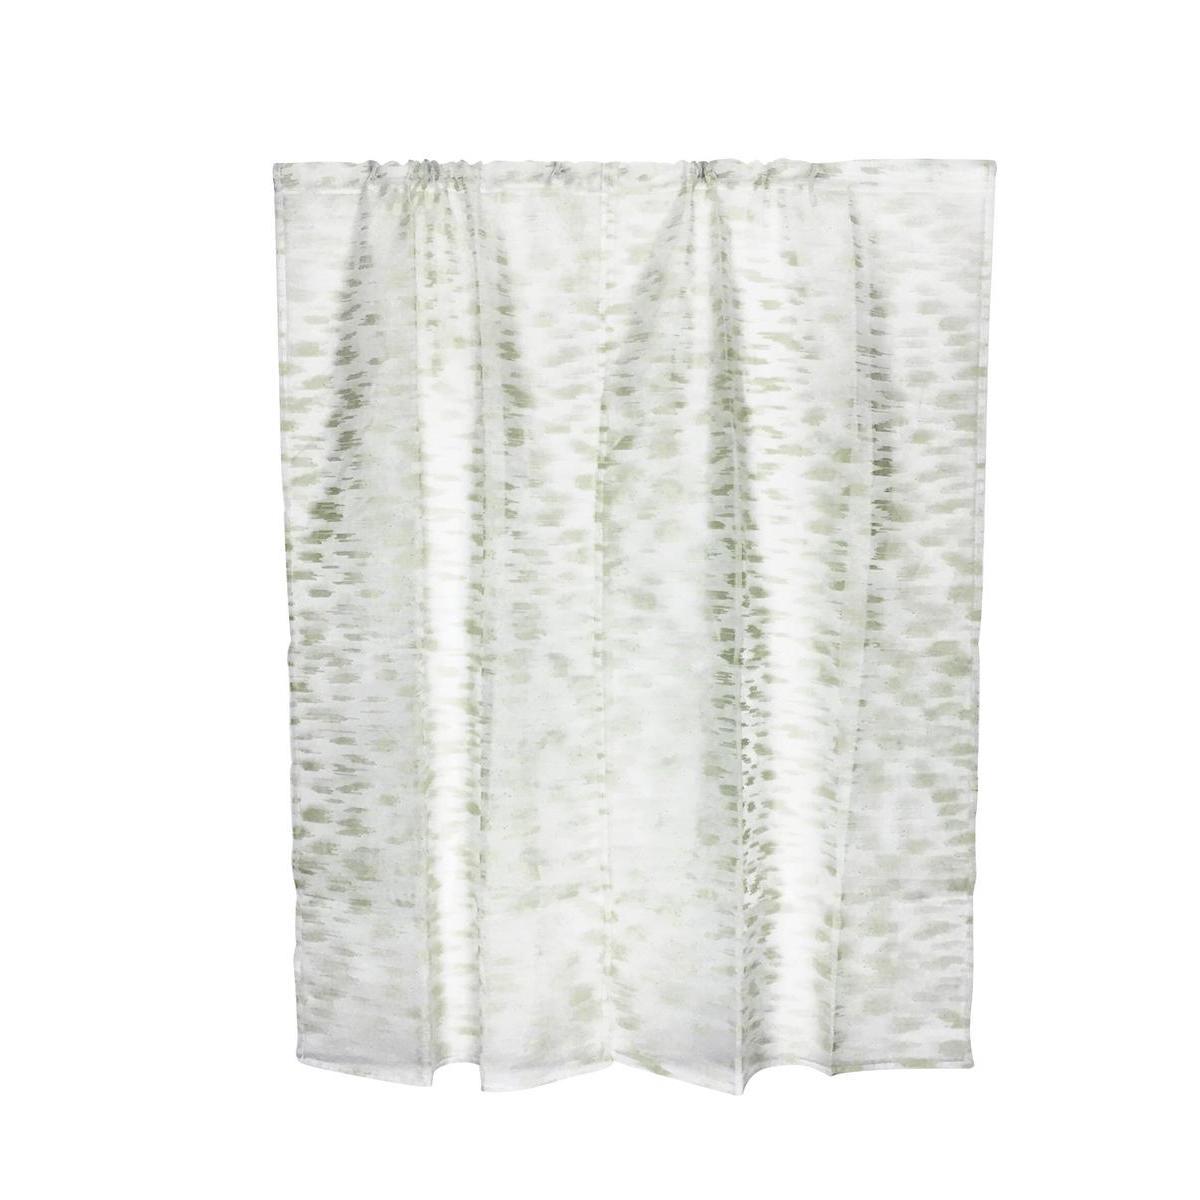 Paire de vitrages - 60 x 120 cm - 100 % Polyester - Vert d'eau